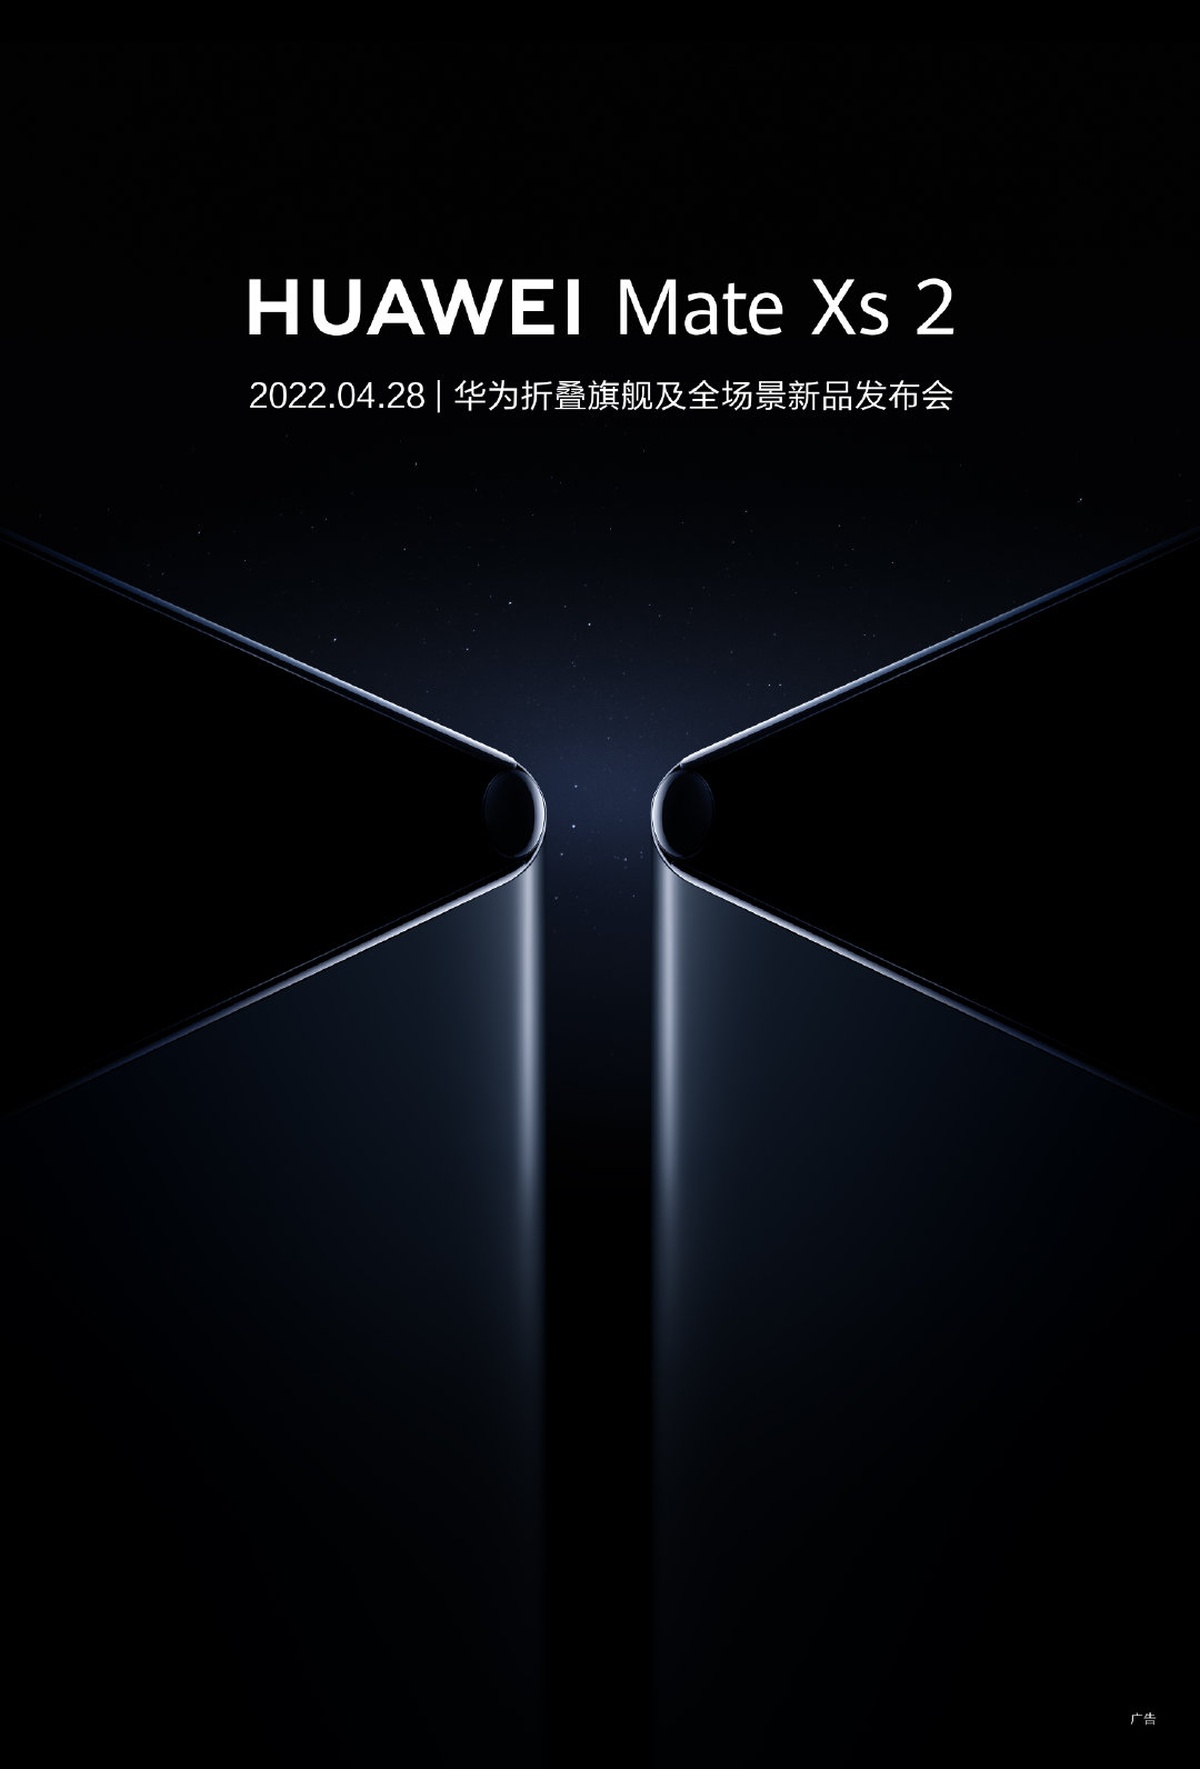 Huawei Mate Xs 2 zaproszenie